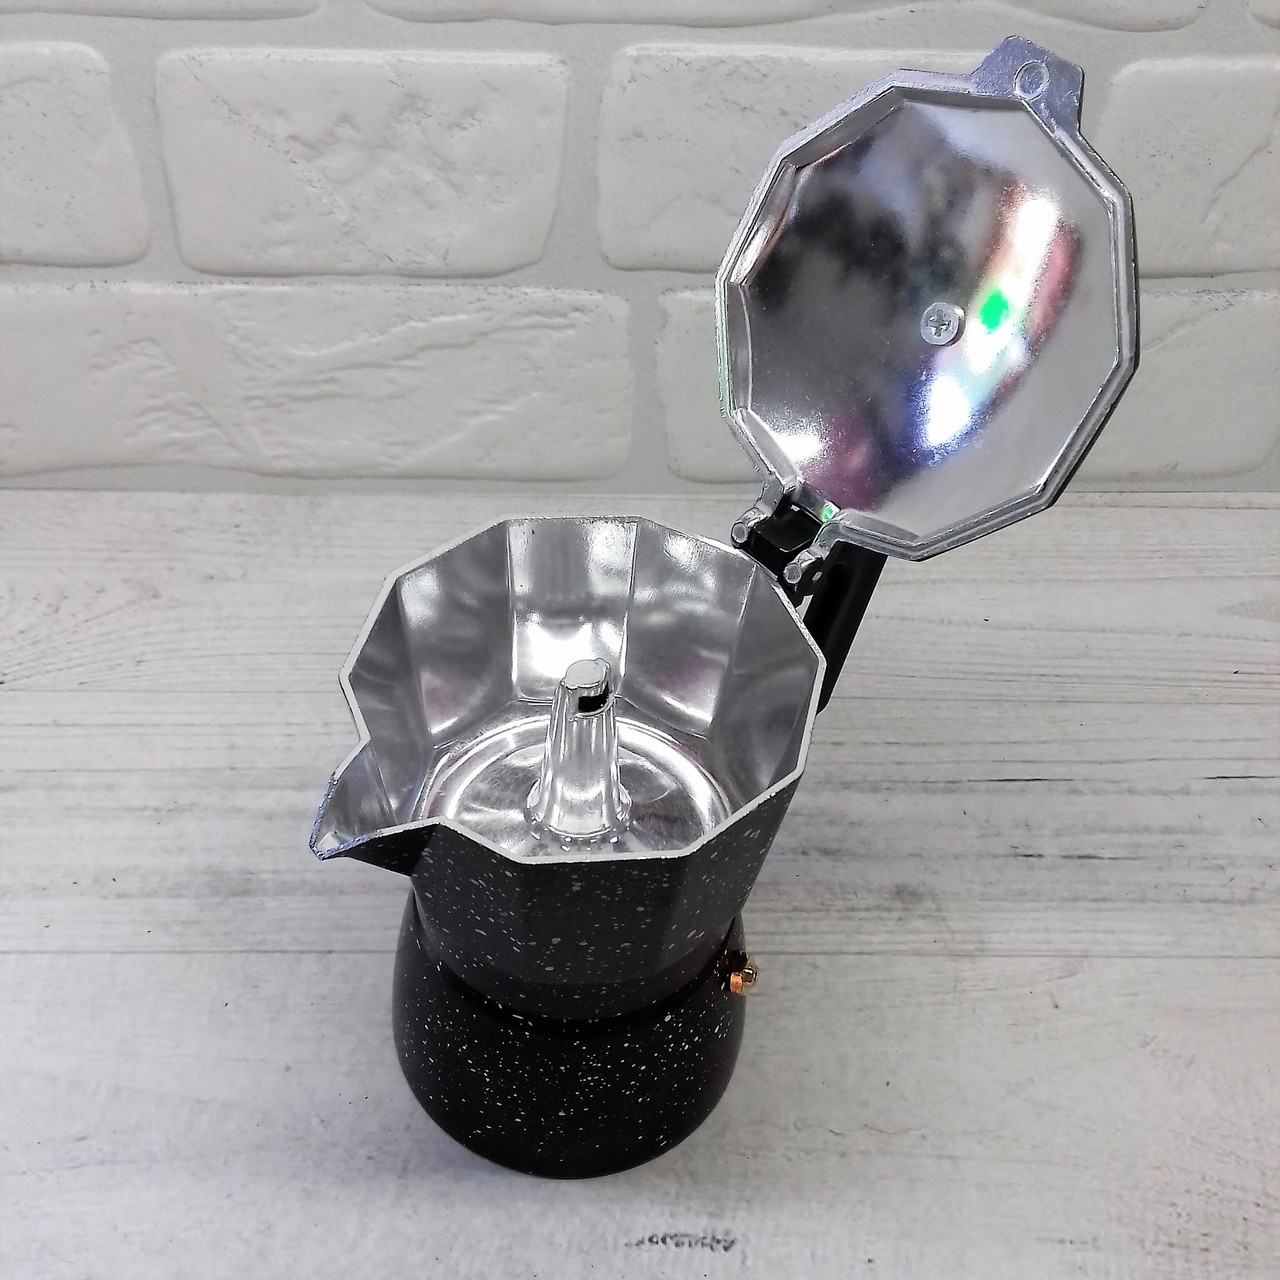 Кофеварка гейзерная алюминиевая 6 чашек мраморное покрытие Edenberg EB - 3785 ✅ базовая цена $7.68 ✔ Опт ✔ Скидки ✔ Заходите! - Интернет-магазин ✅ Фортуна-опт ✅